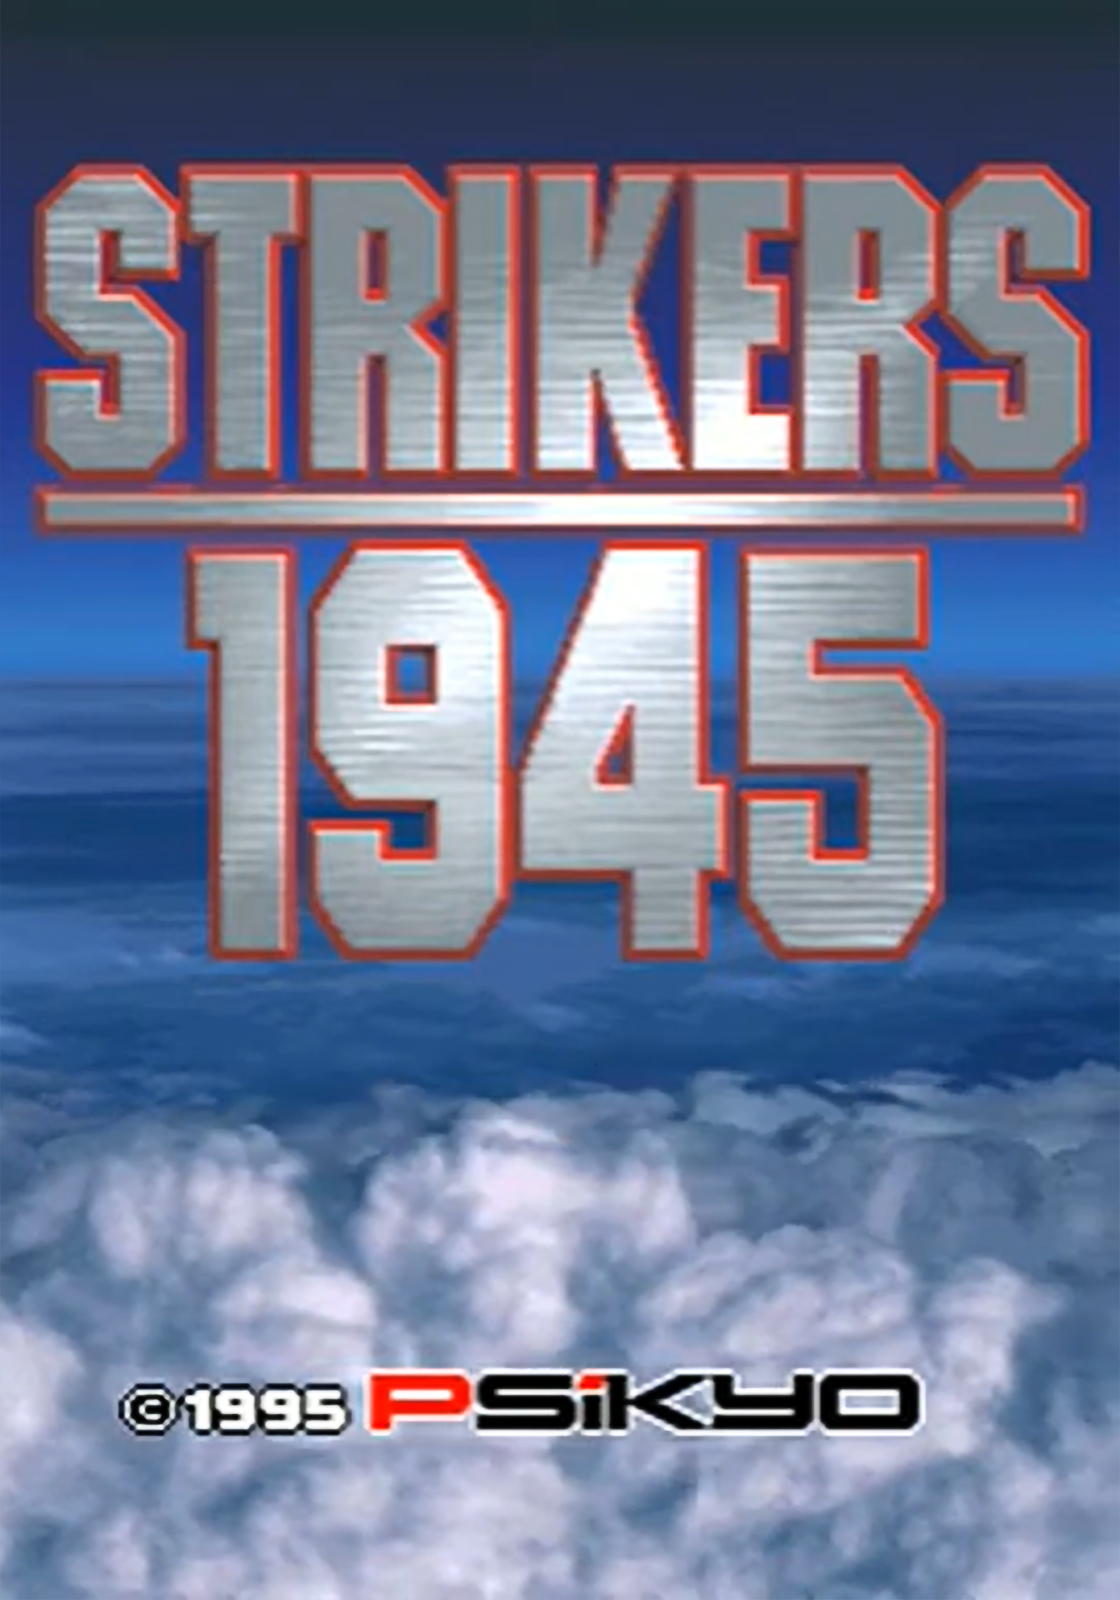 STRIKERS 1945 FLASH jogo online gratuito em